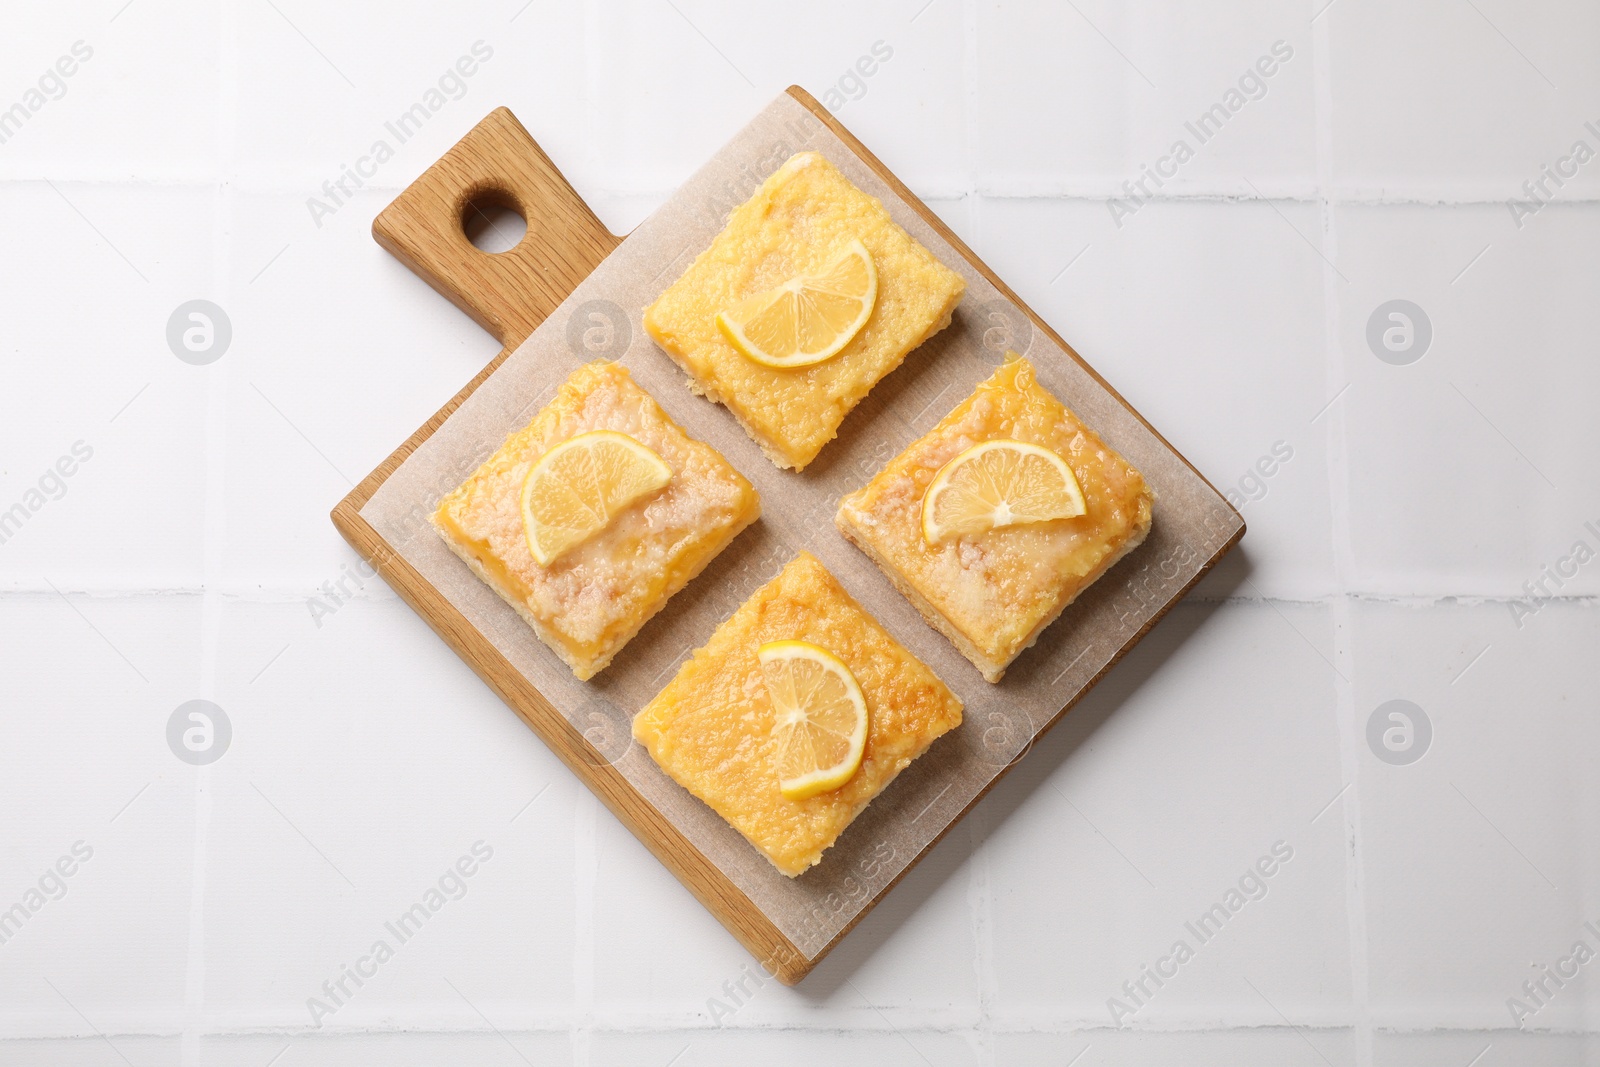 Photo of Tasty lemon bars on white tiled table, top view